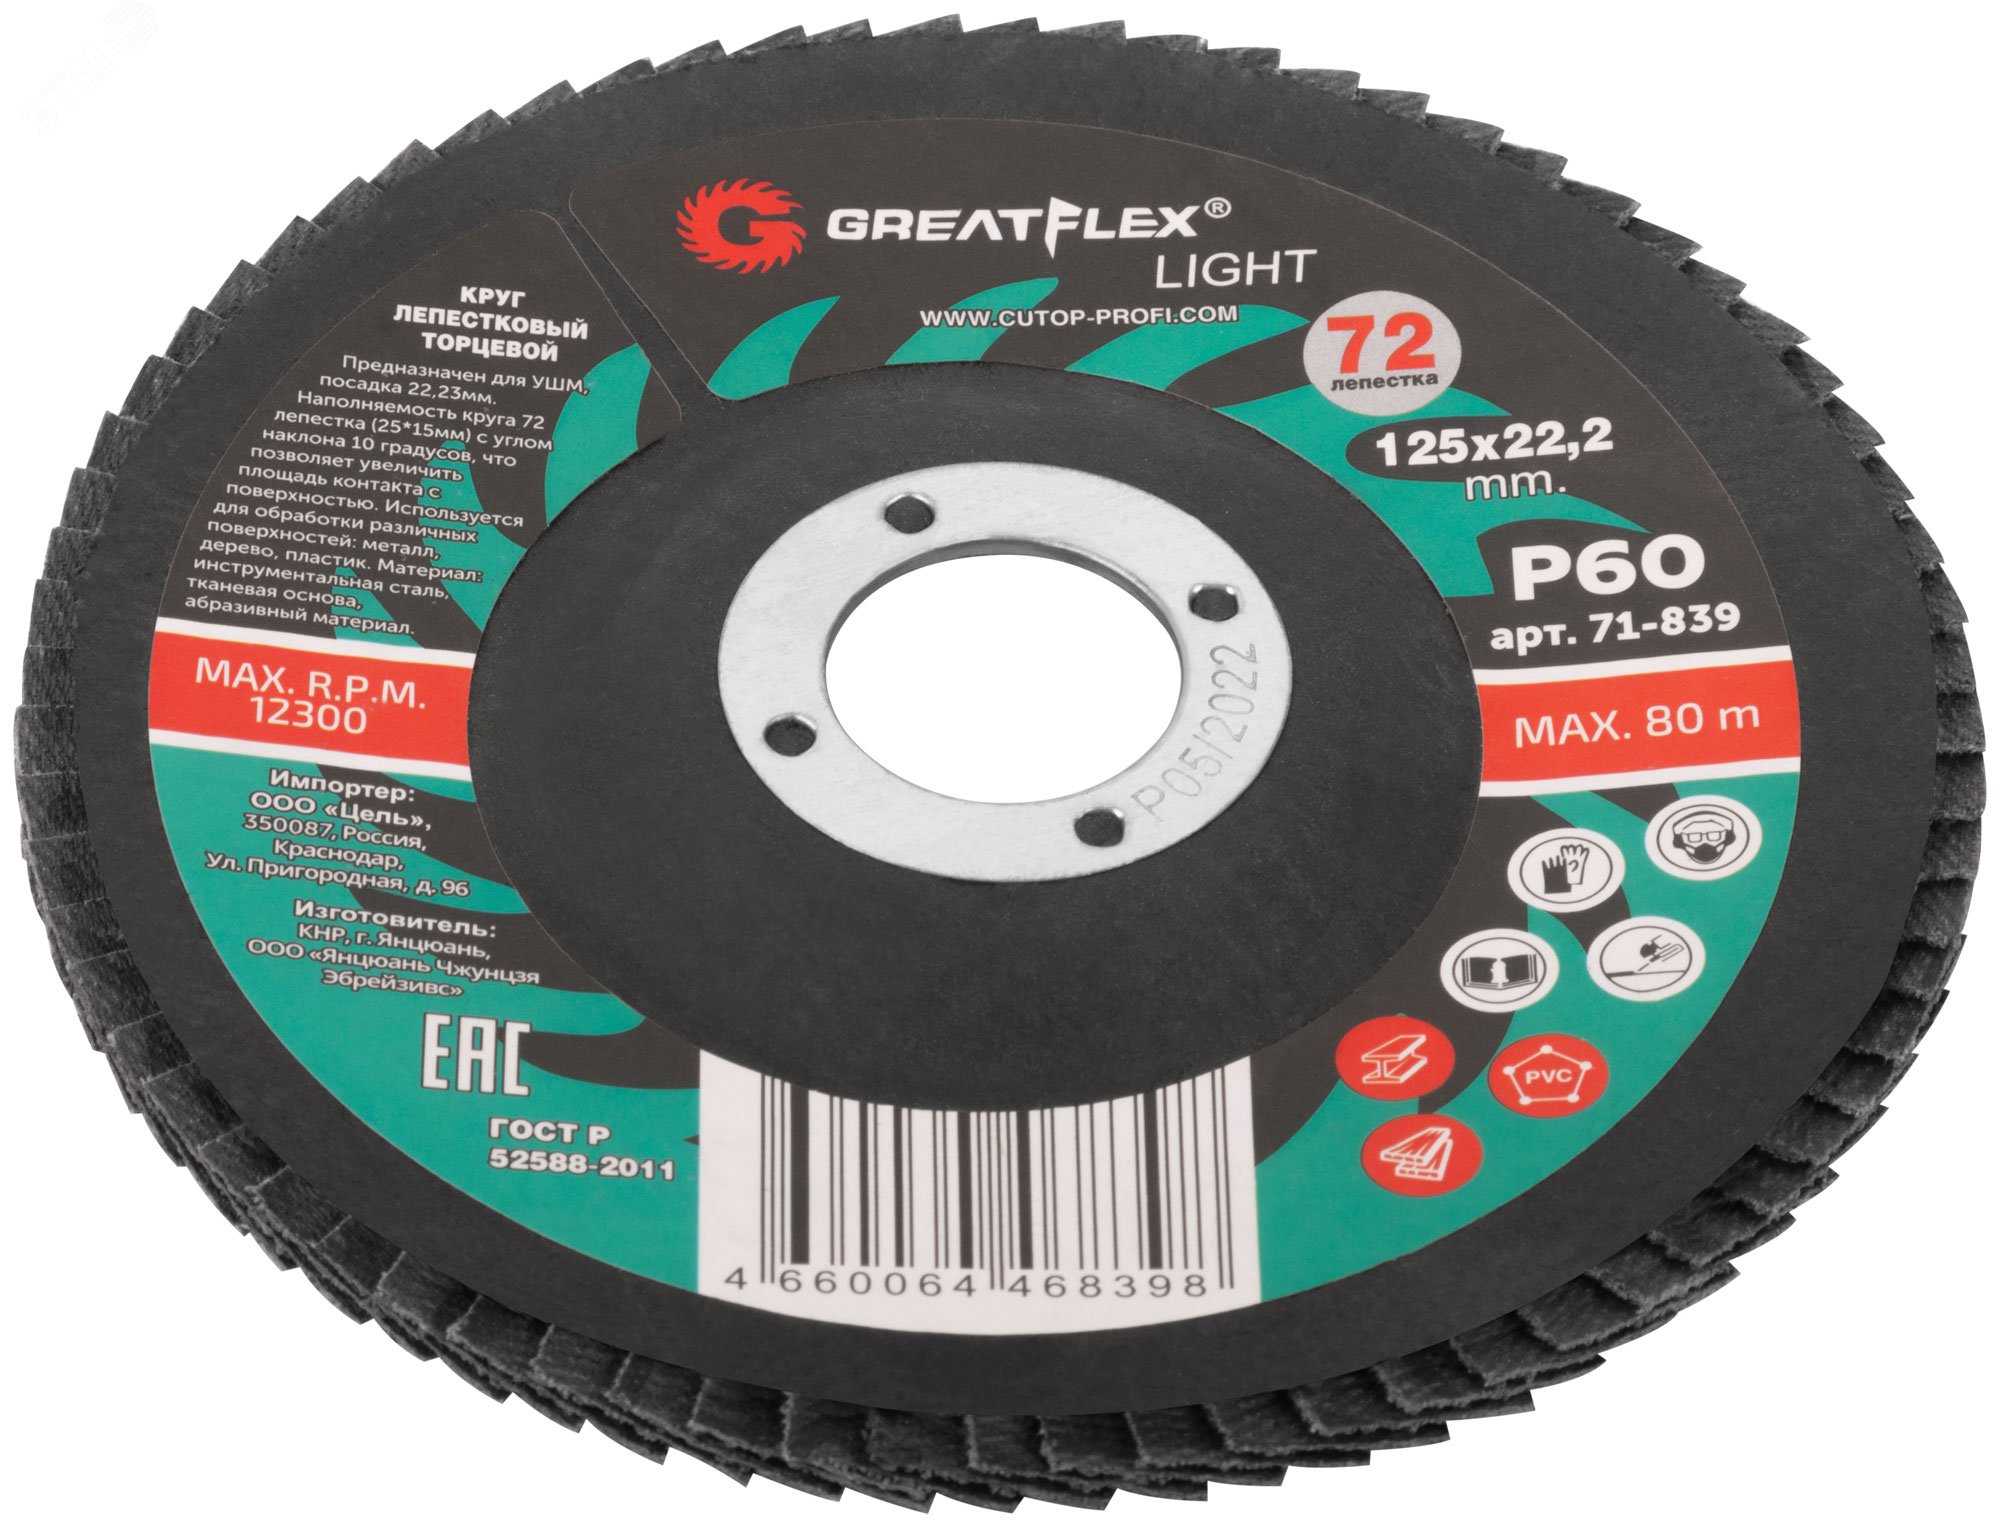 Круг лепестковый торцевой GreatFlex Light (72 лепестка): 125 х 22,2 мм, P60 71-839 Greatflex - превью 2